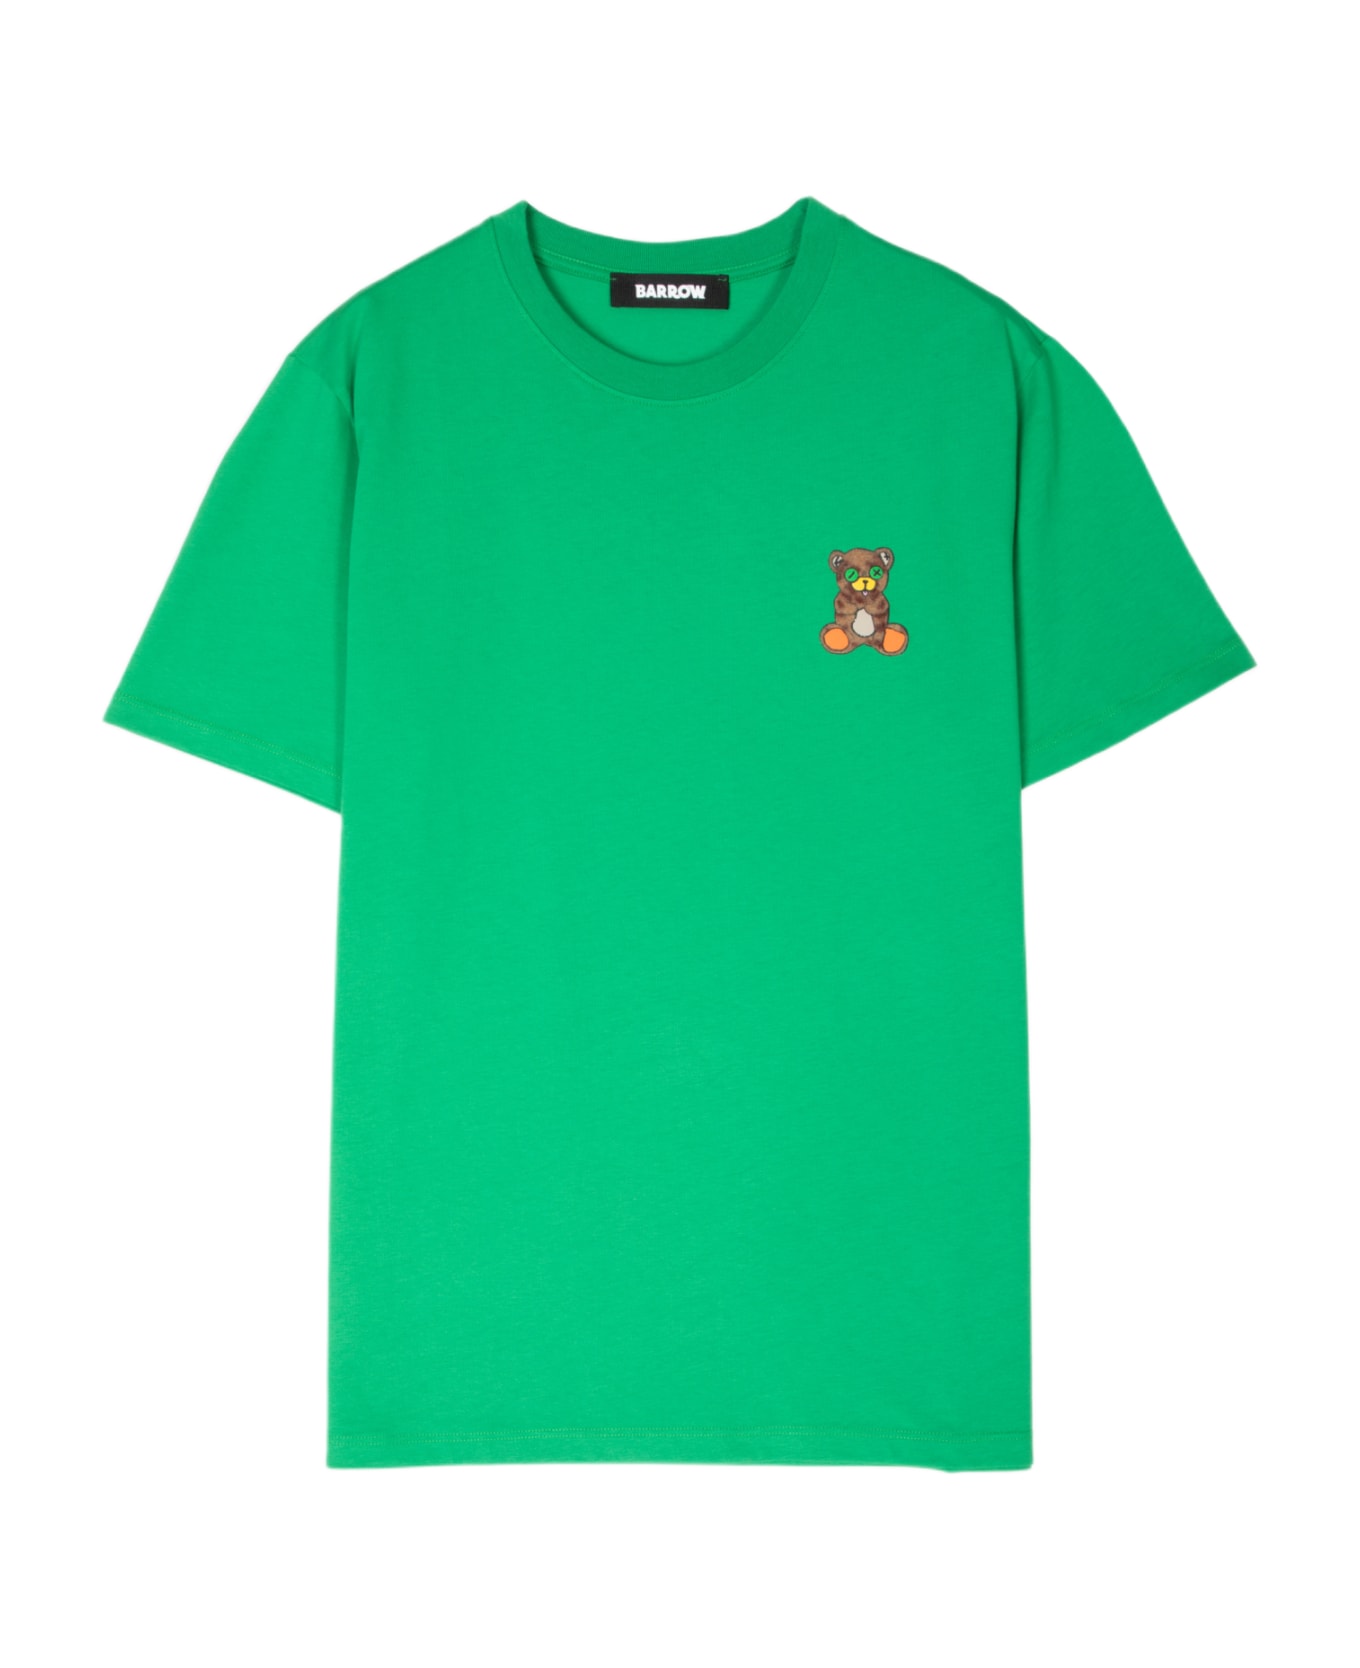 Barrow Jersey T-shirt Unisex Emerald Green T-shirt With Chest Teddy Bear Print - Green